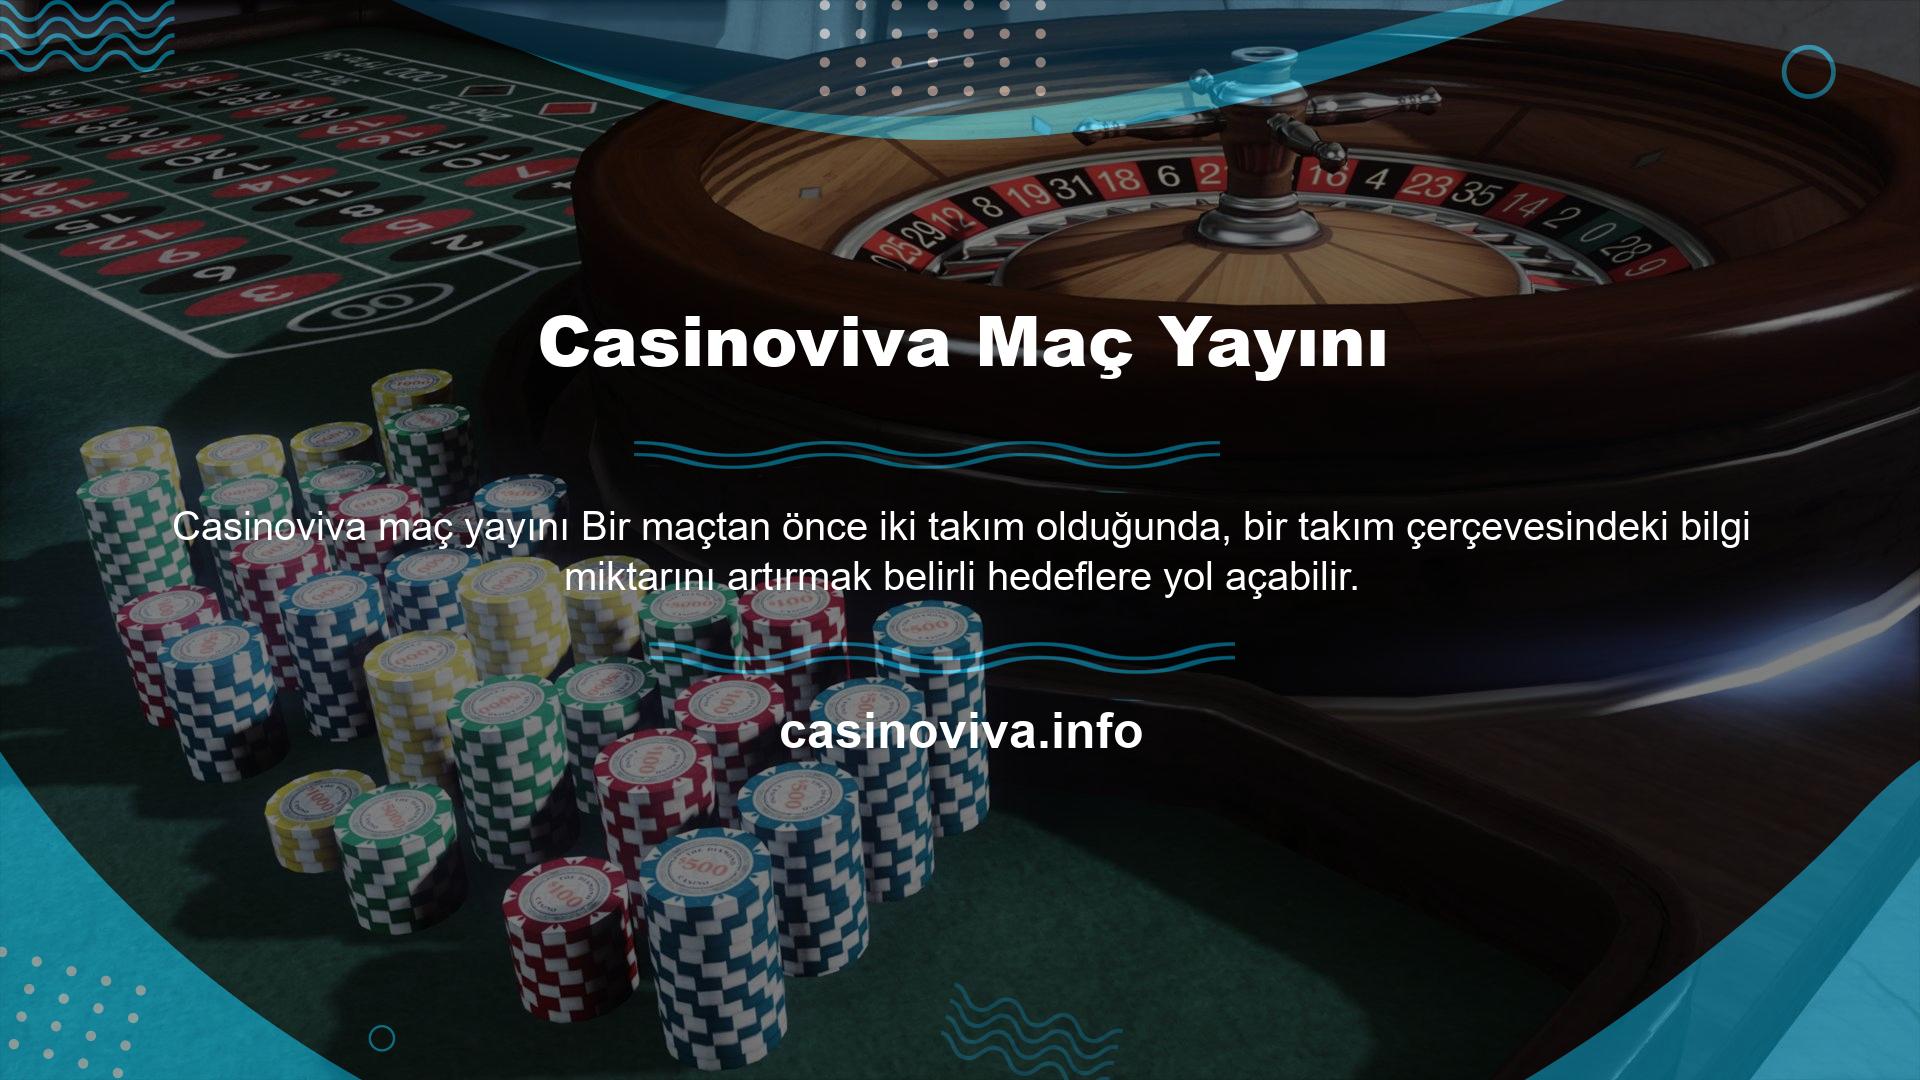 Casinoviva Maç Yayını